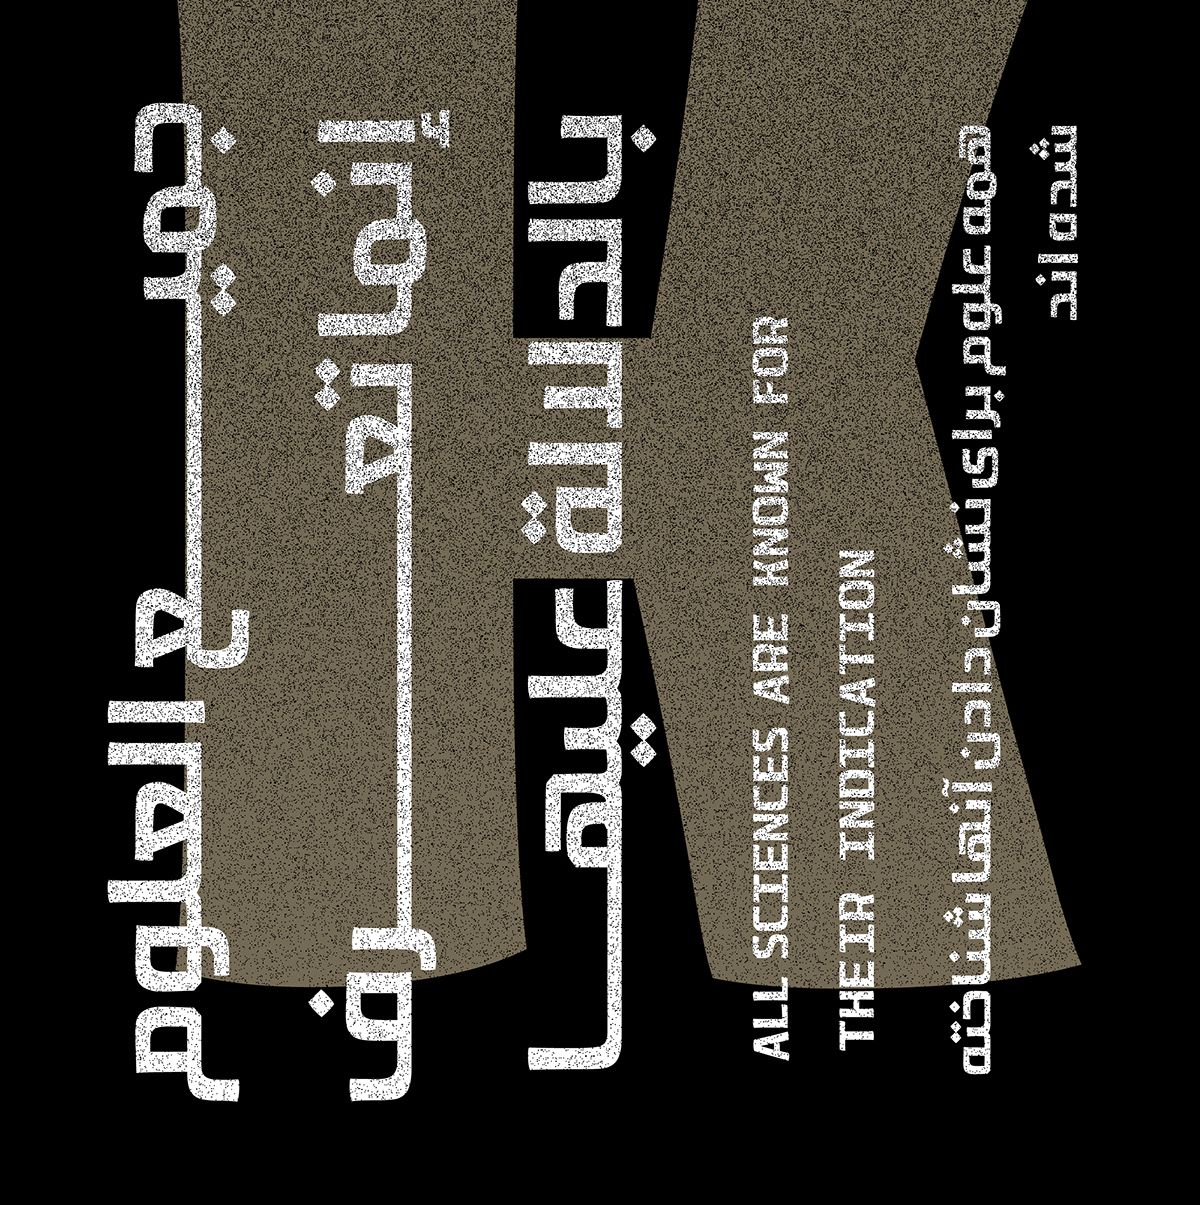 arabic farsi font fonts koufi latain toleen type Typeface